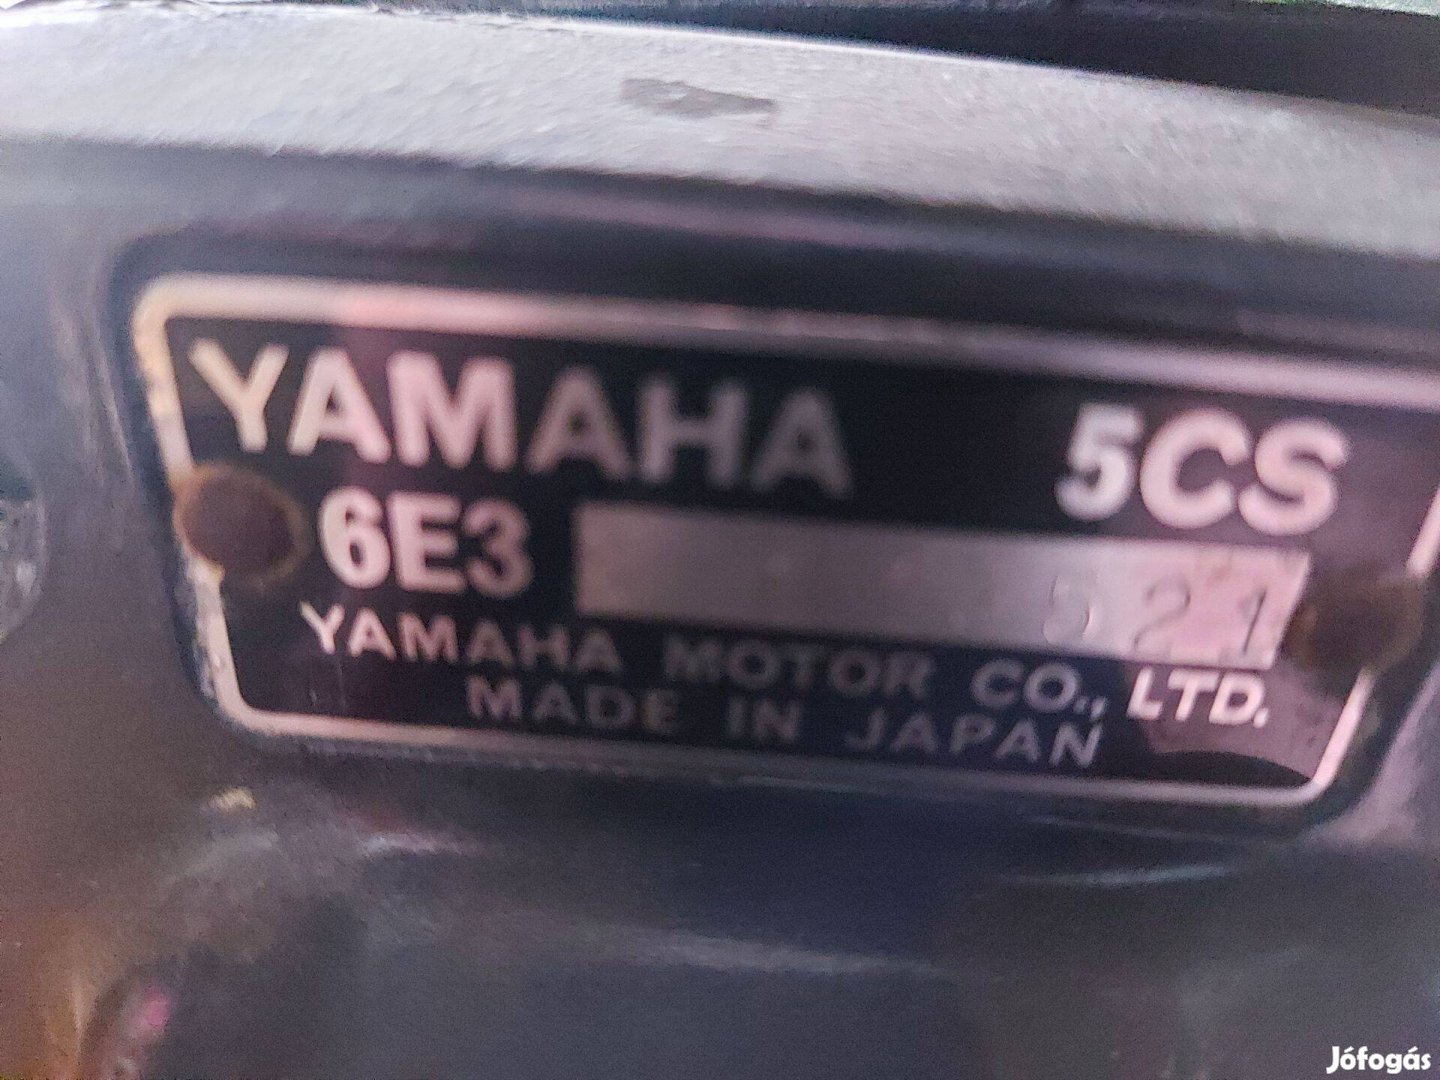 Yamaha csónakmotór